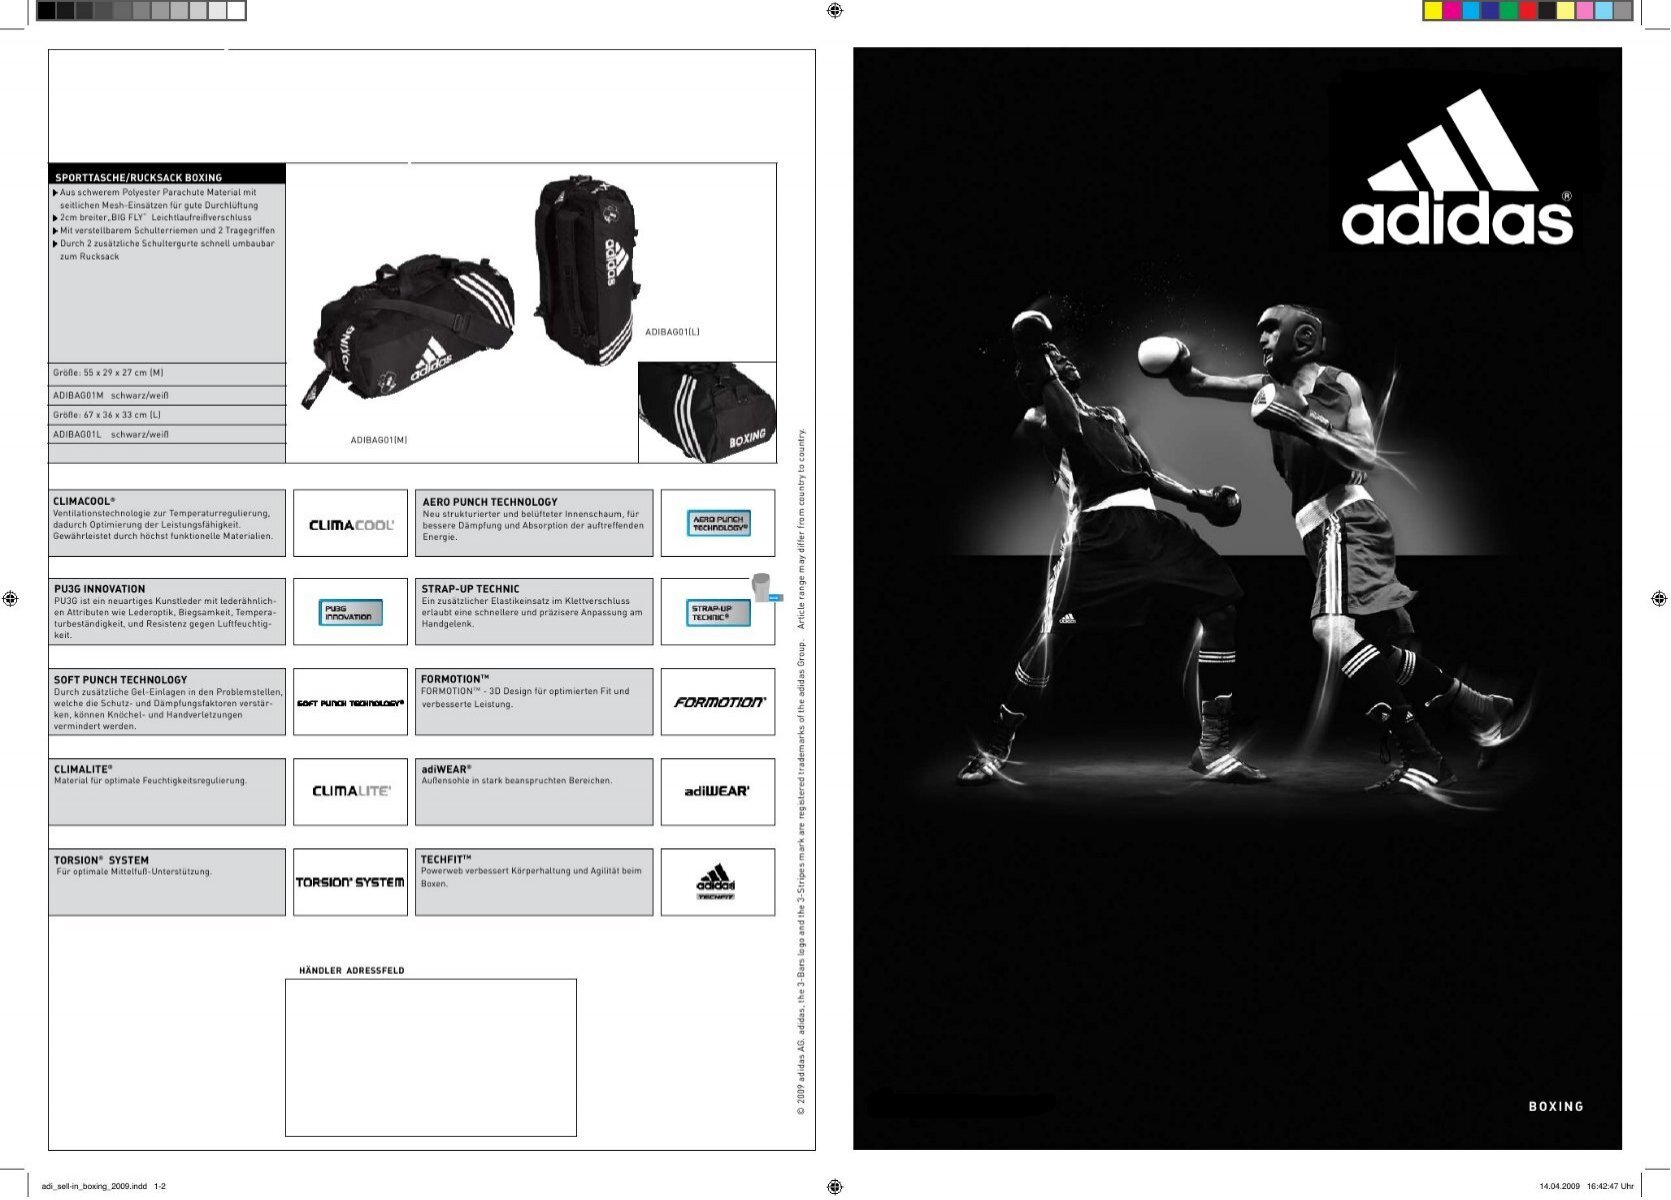 adidas-boxing-katalog-download-11mb